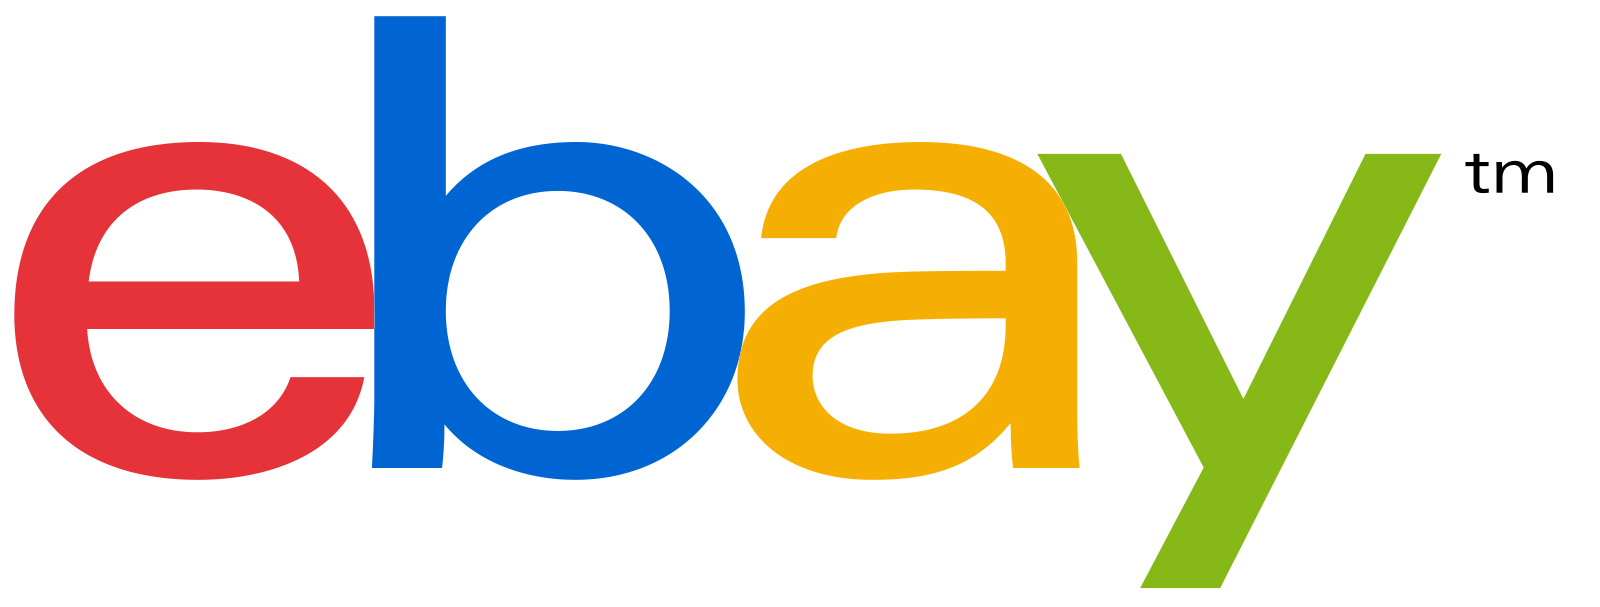 logo_ebay_1